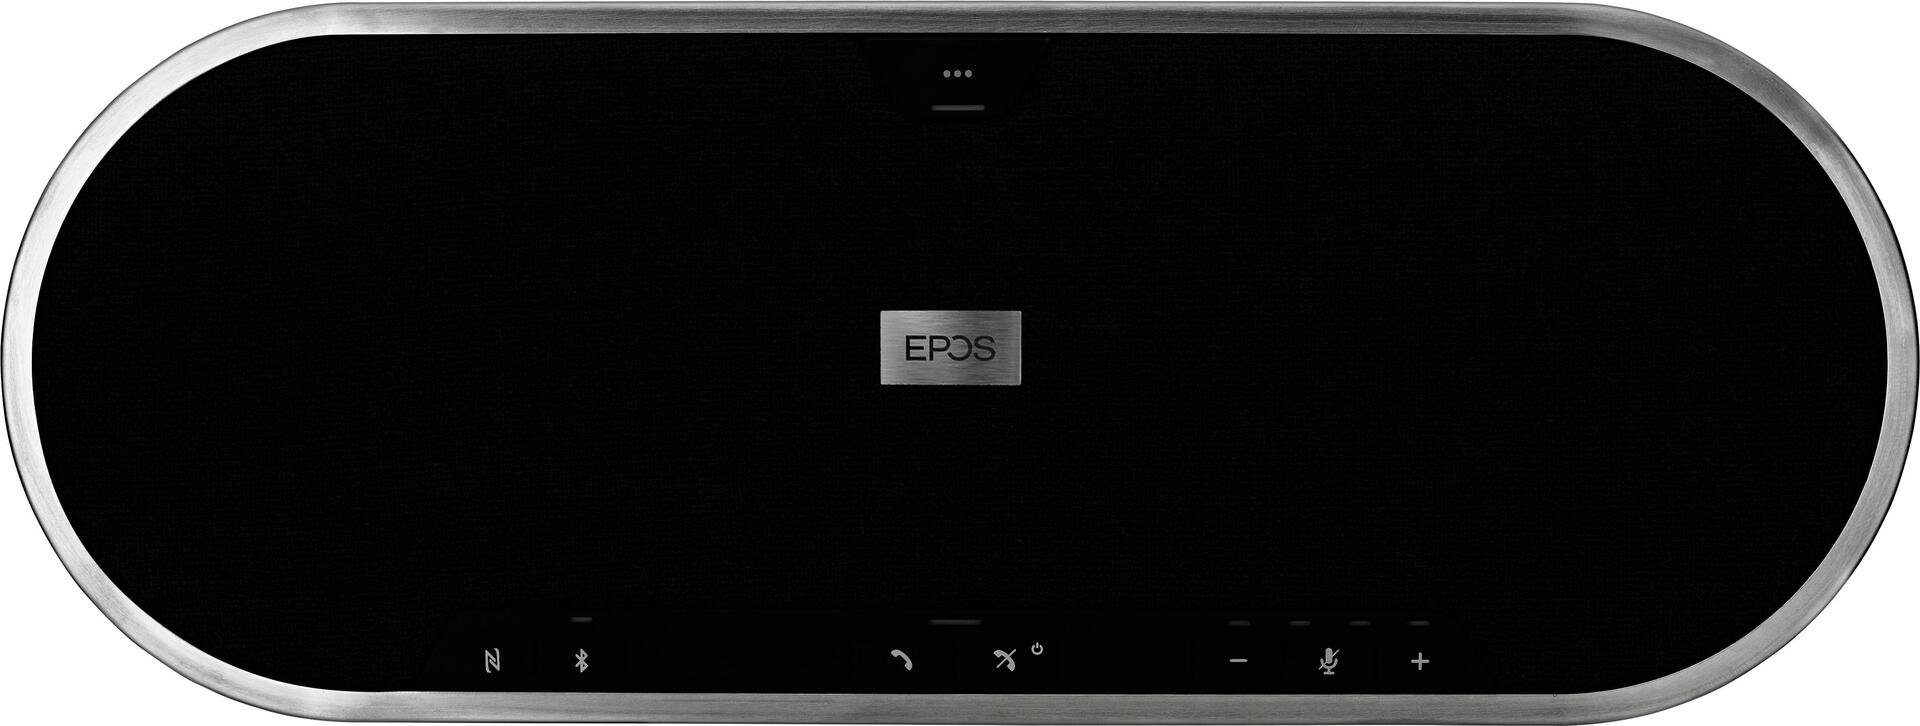 EPOS Germany EPOS EXPAND 80 (1000202)